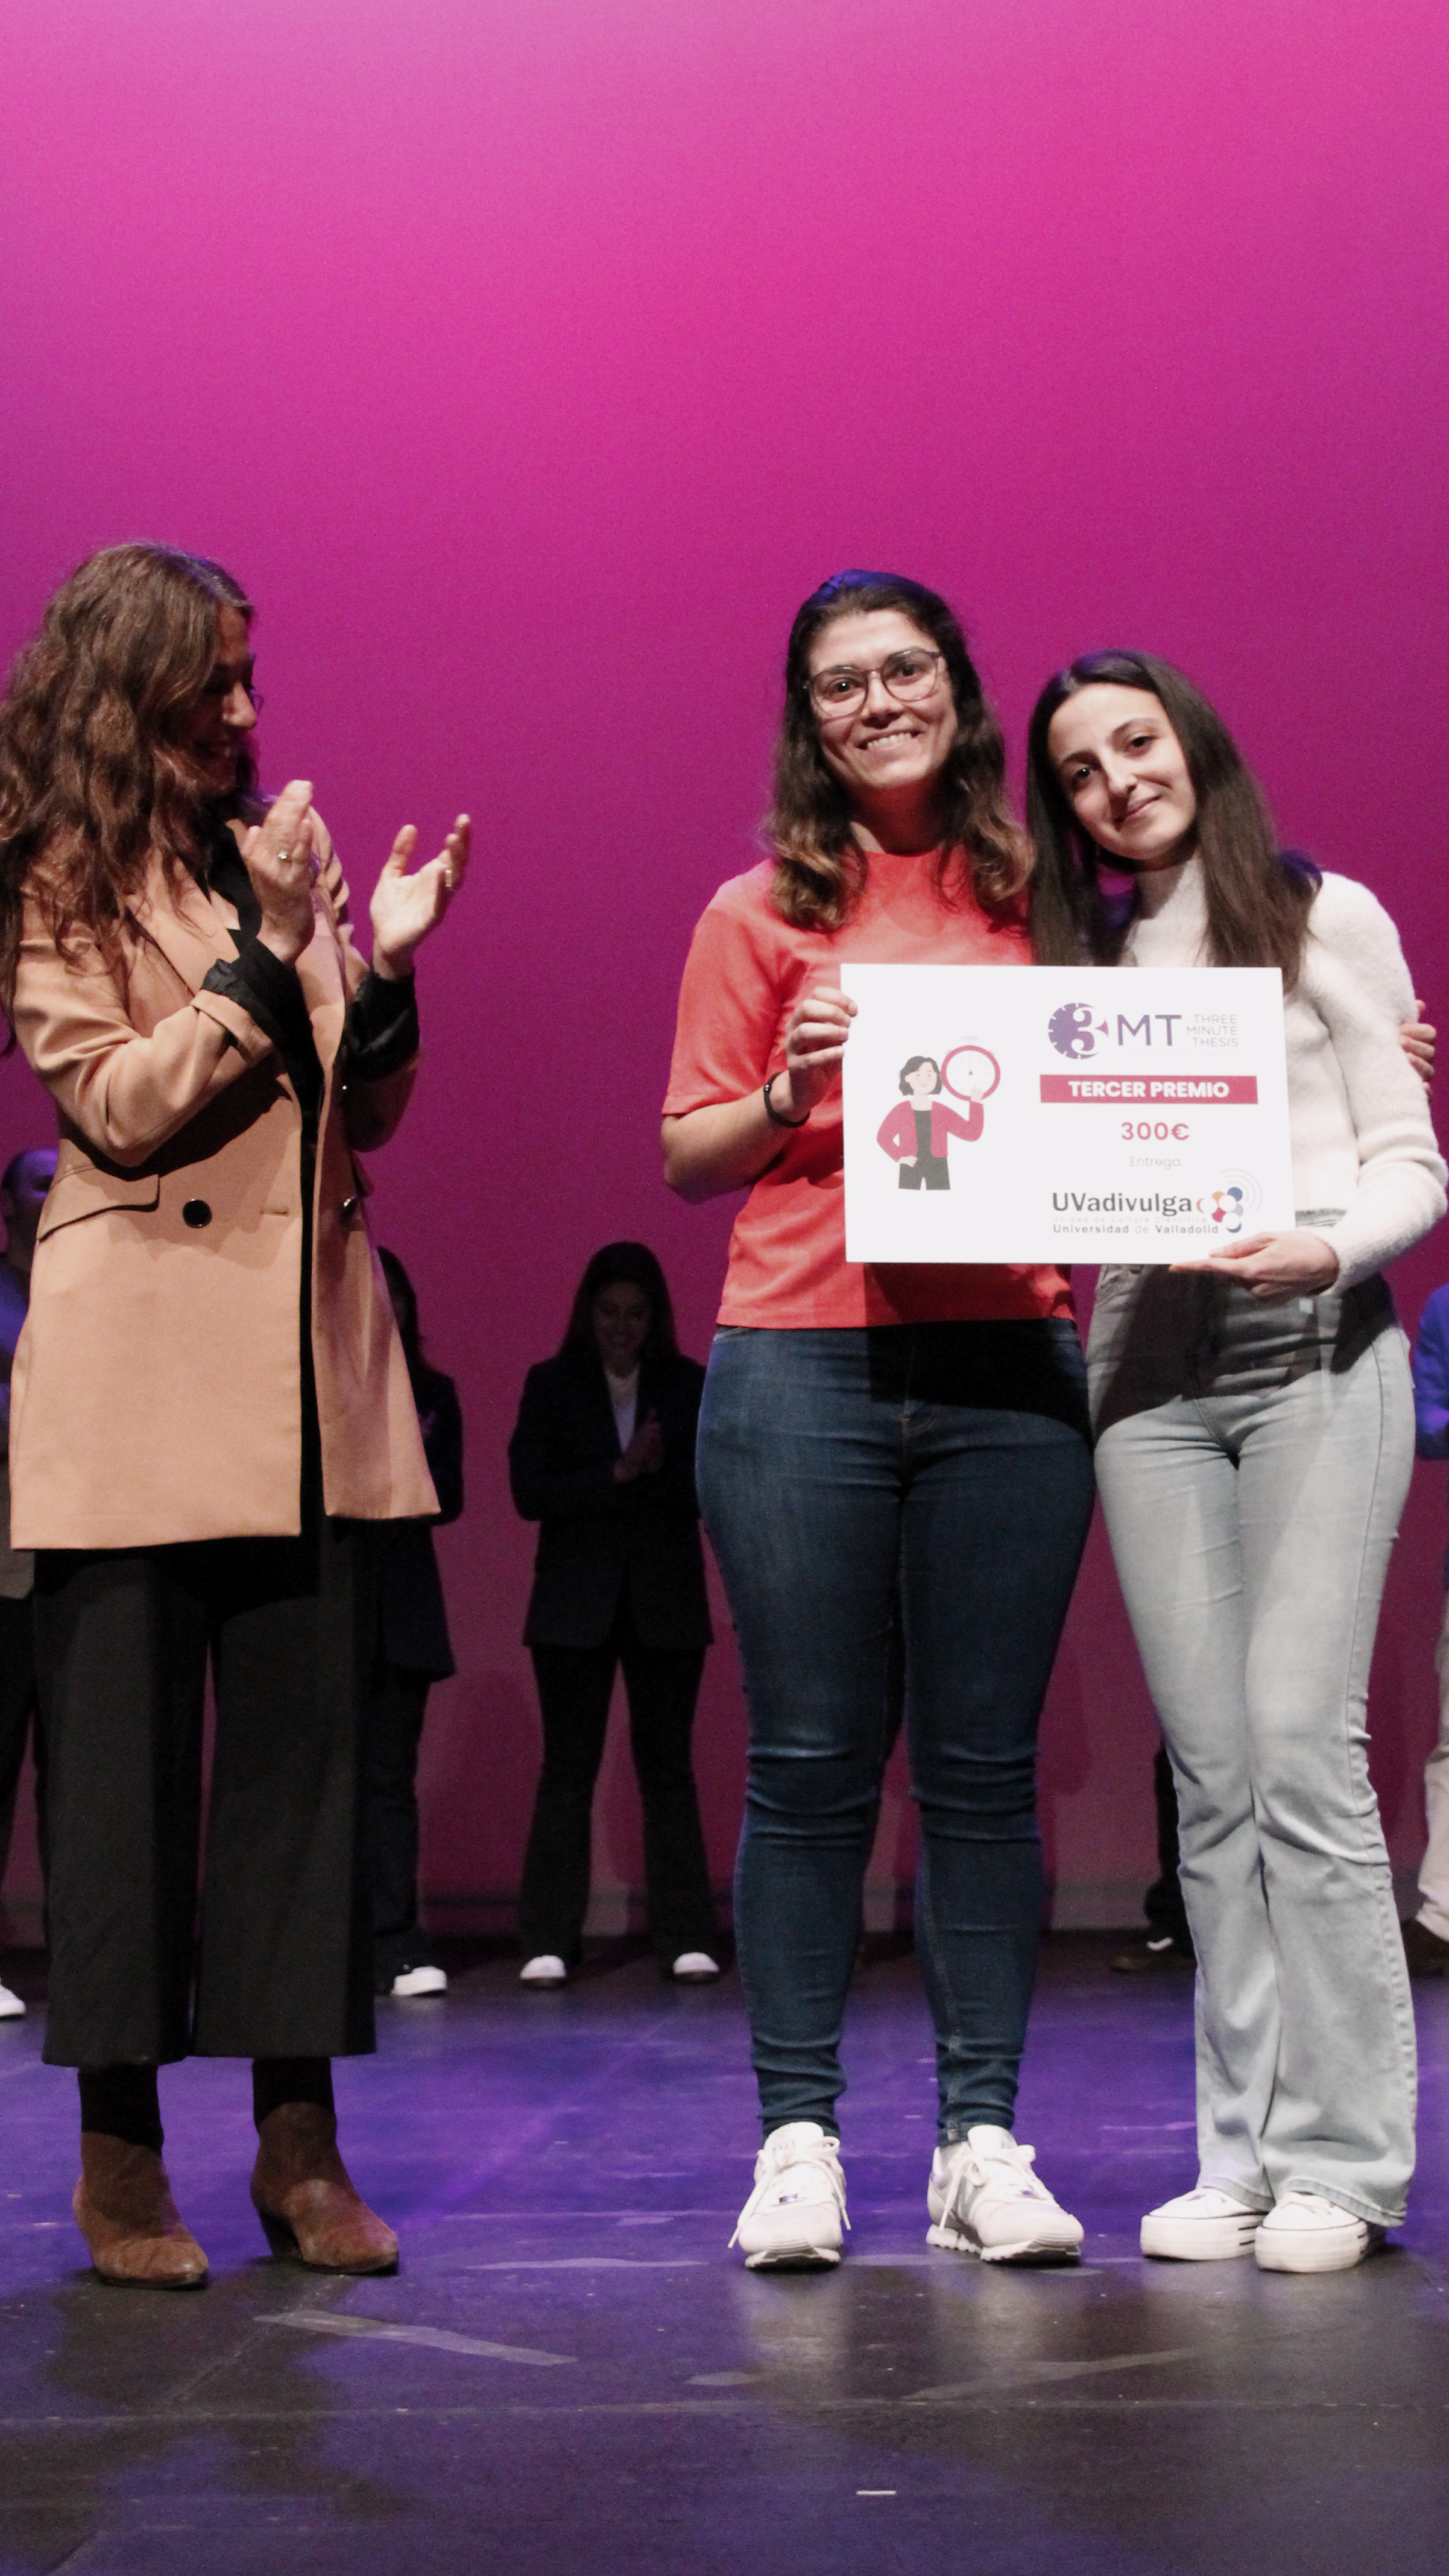 Clara Pérez y Teresa Sigüenza recogiendo el tercer premio, entregado ex aequo